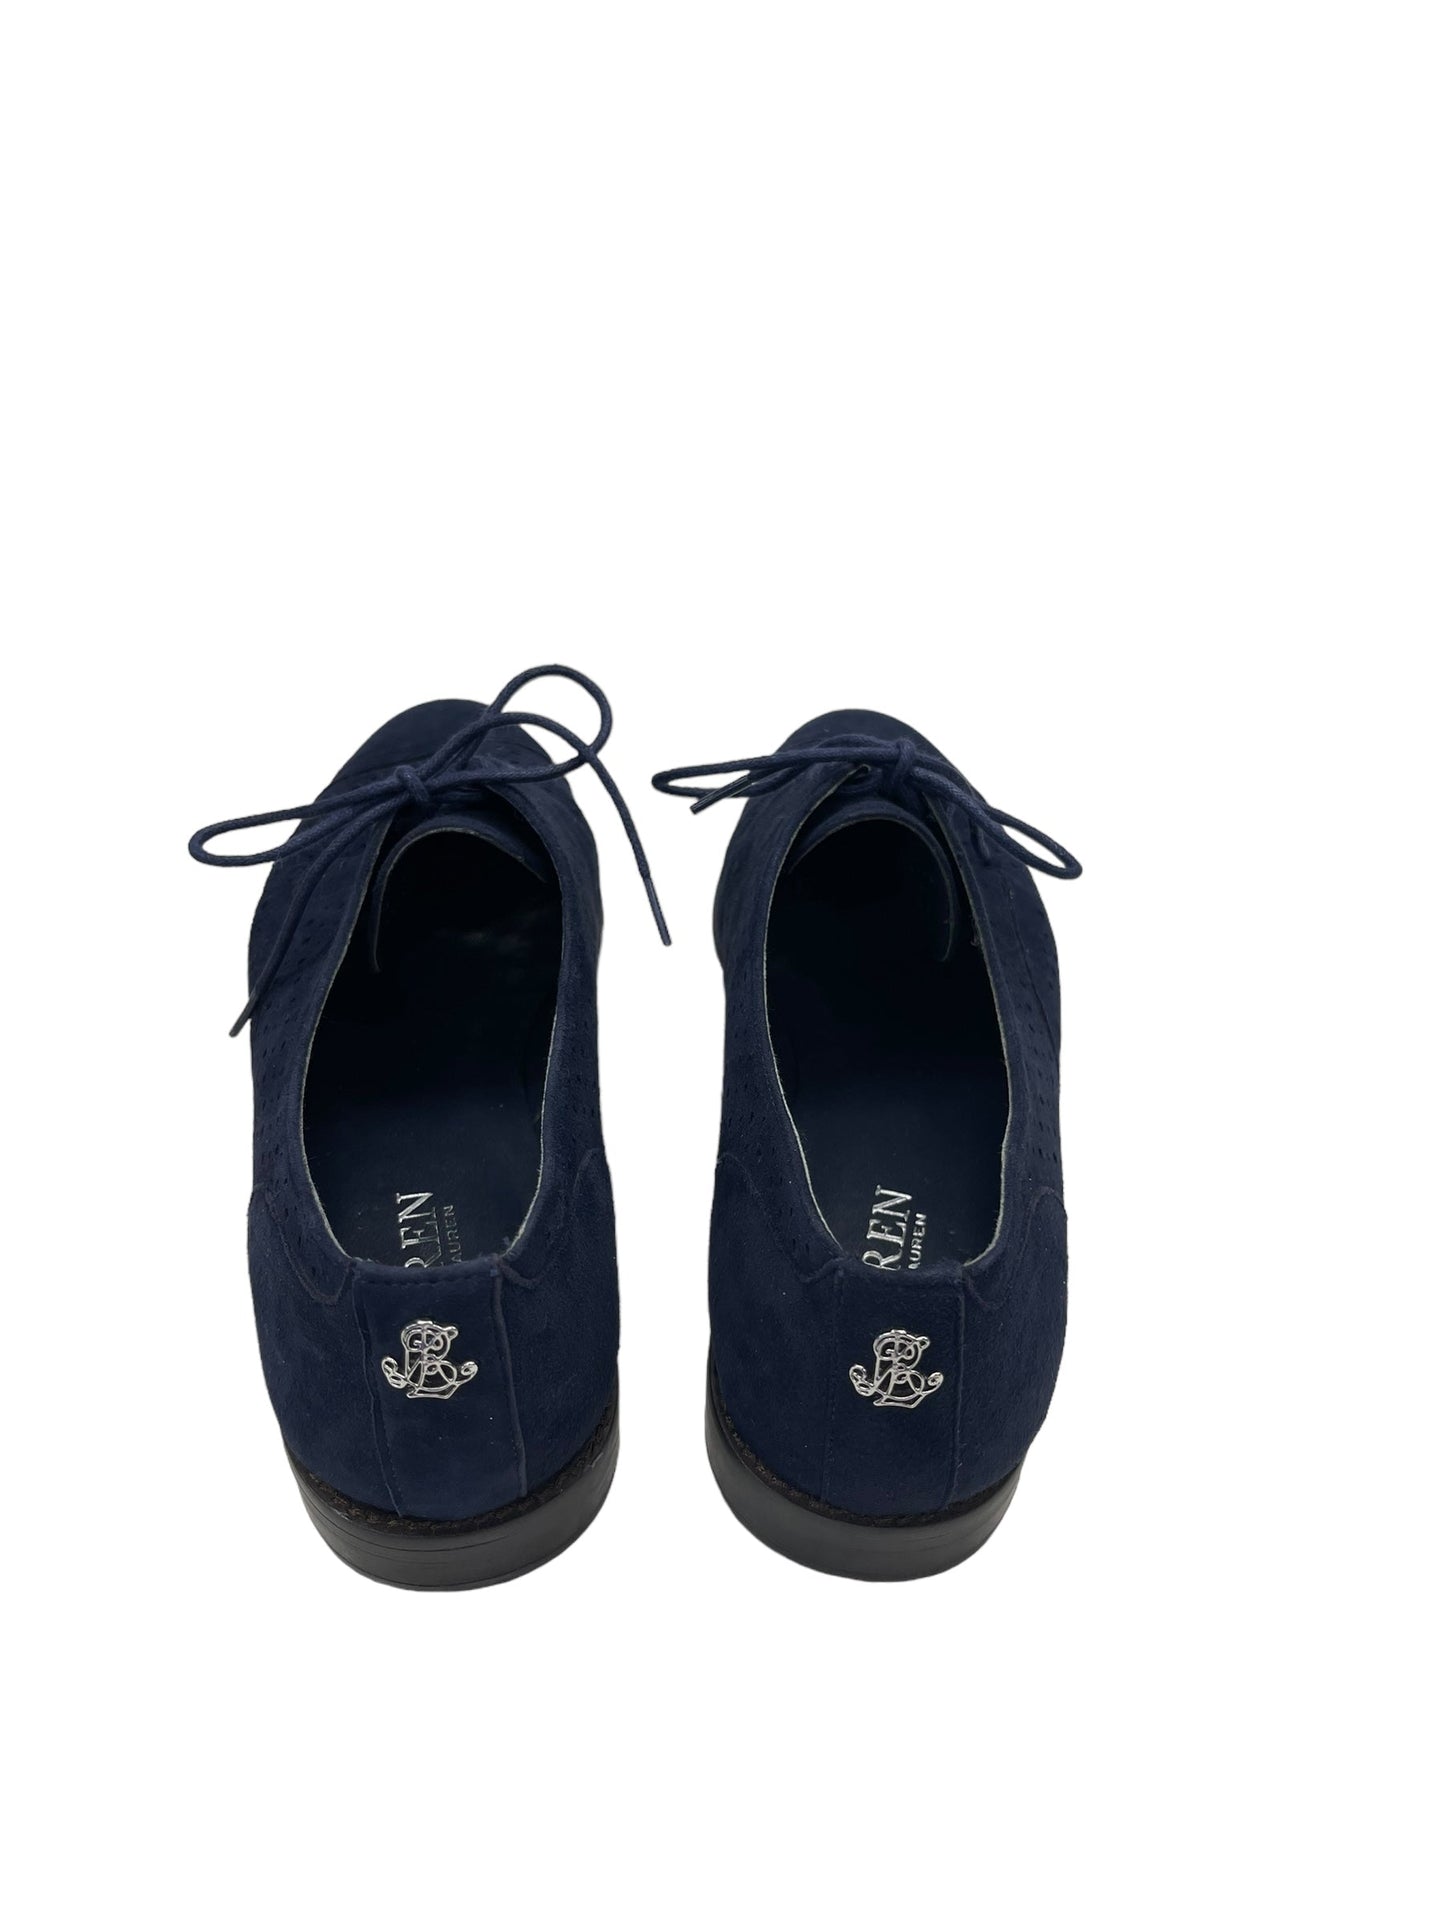 Navy Shoes Flats Lauren By Ralph Lauren, Size 8.5